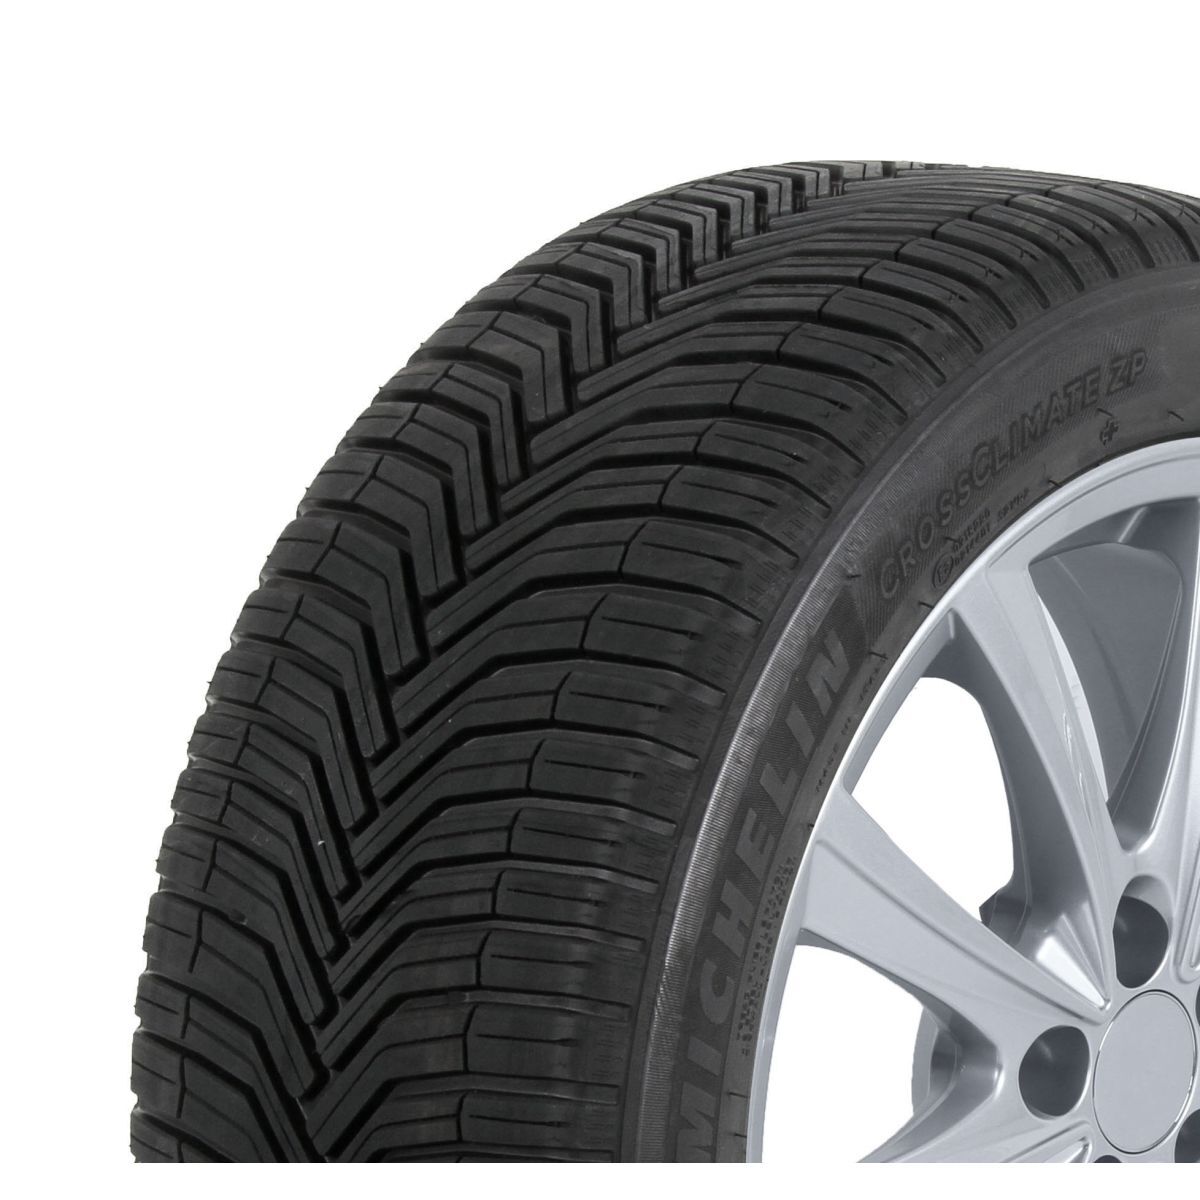 Neumáticos para todas las estaciones MICHELIN CrossClimate+ 185/65R14 XL 90H